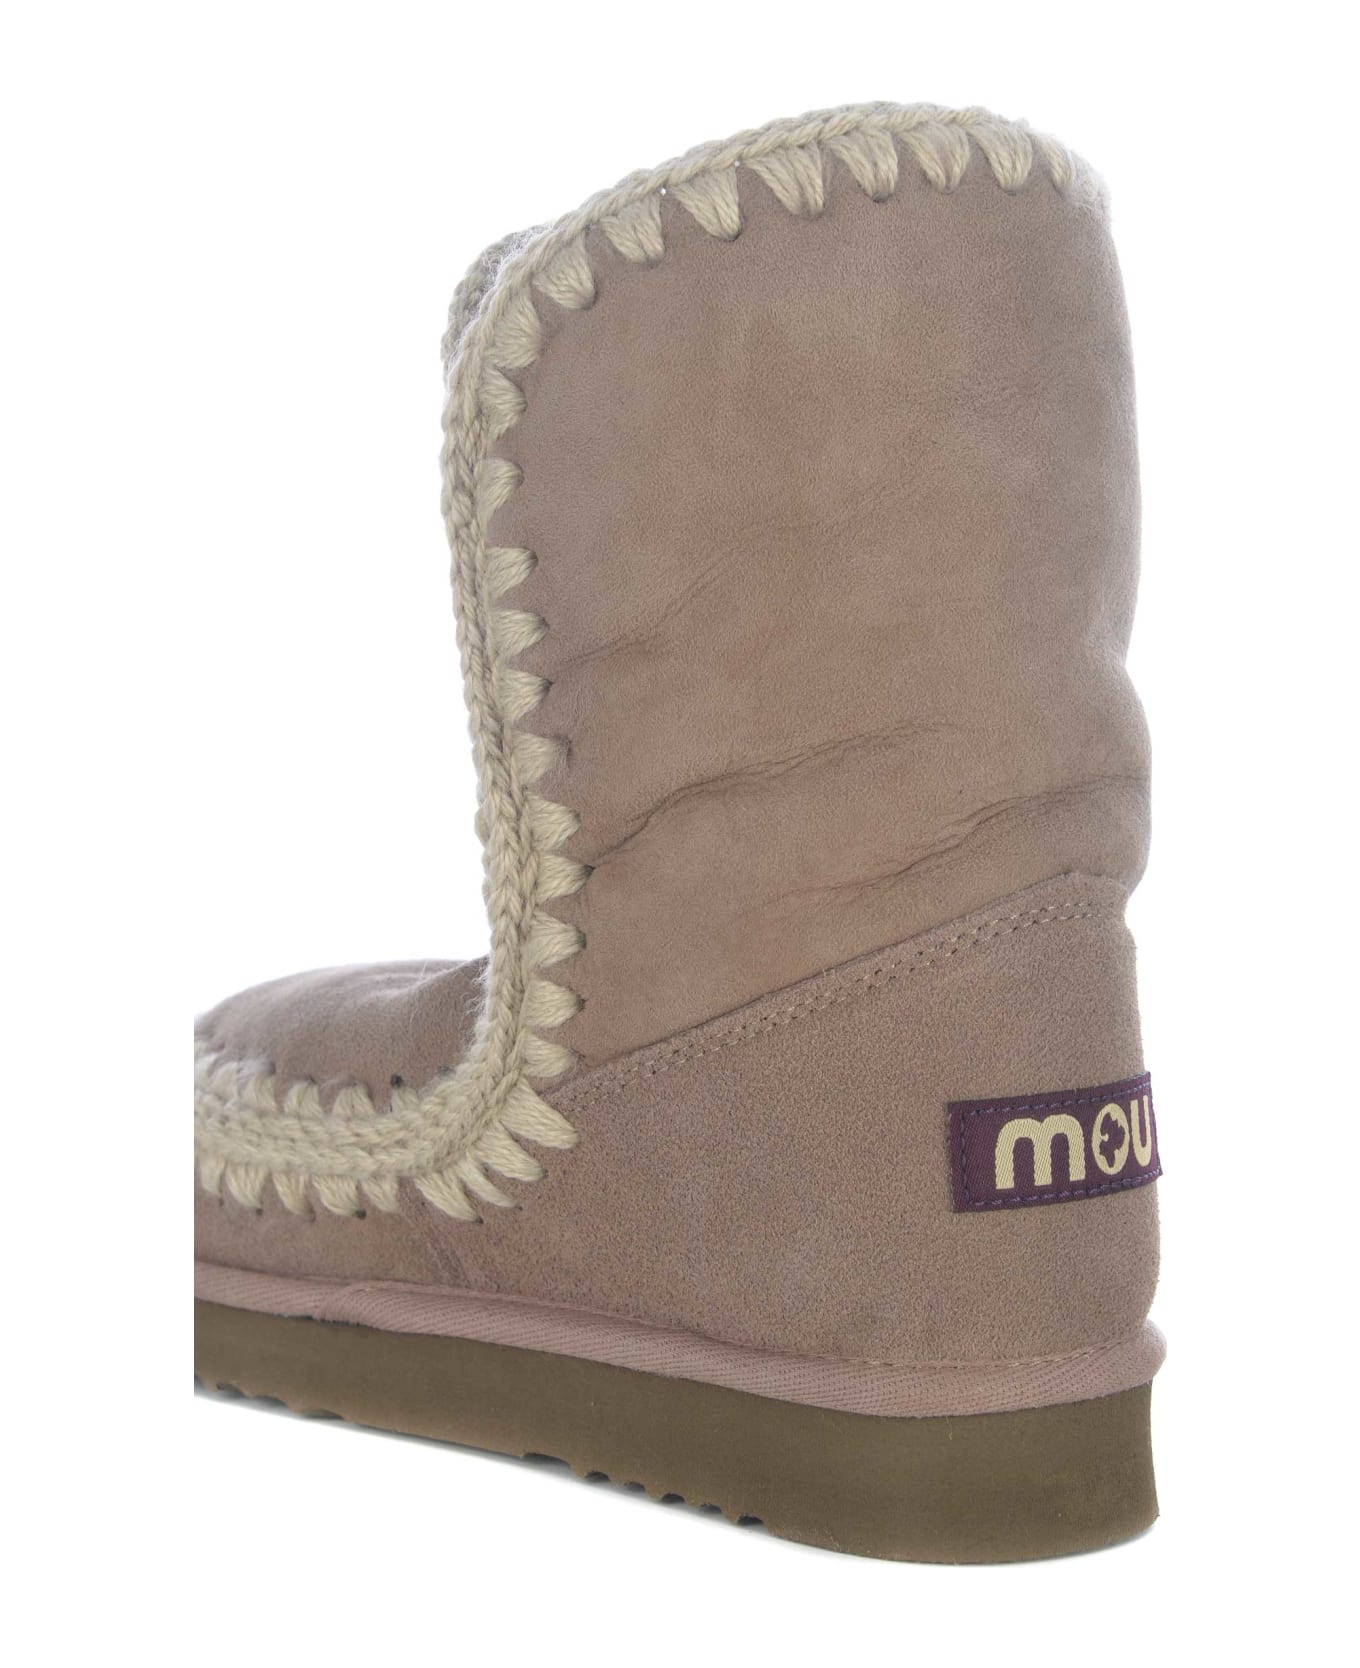 Mou Boots Mou "eskimo24" Made In Suede - Tortora chiaro ブーツ